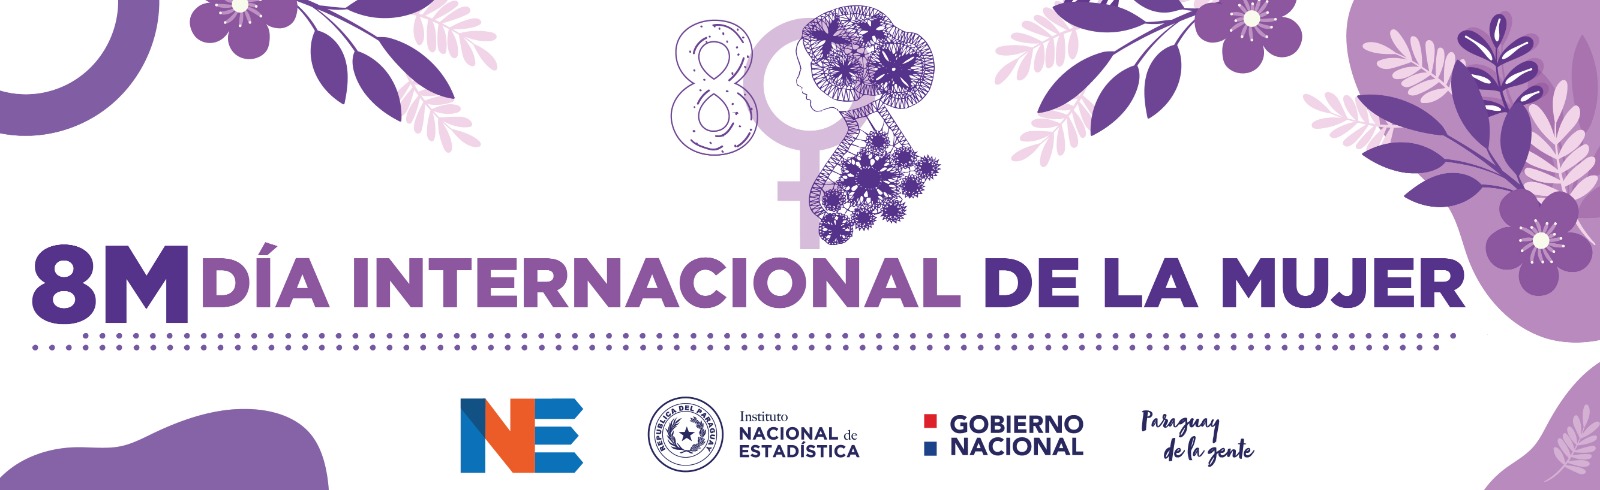 En el Día Internacional de la Mujer, el INE comparte datos sobre la situación de las mujeres en Paraguay